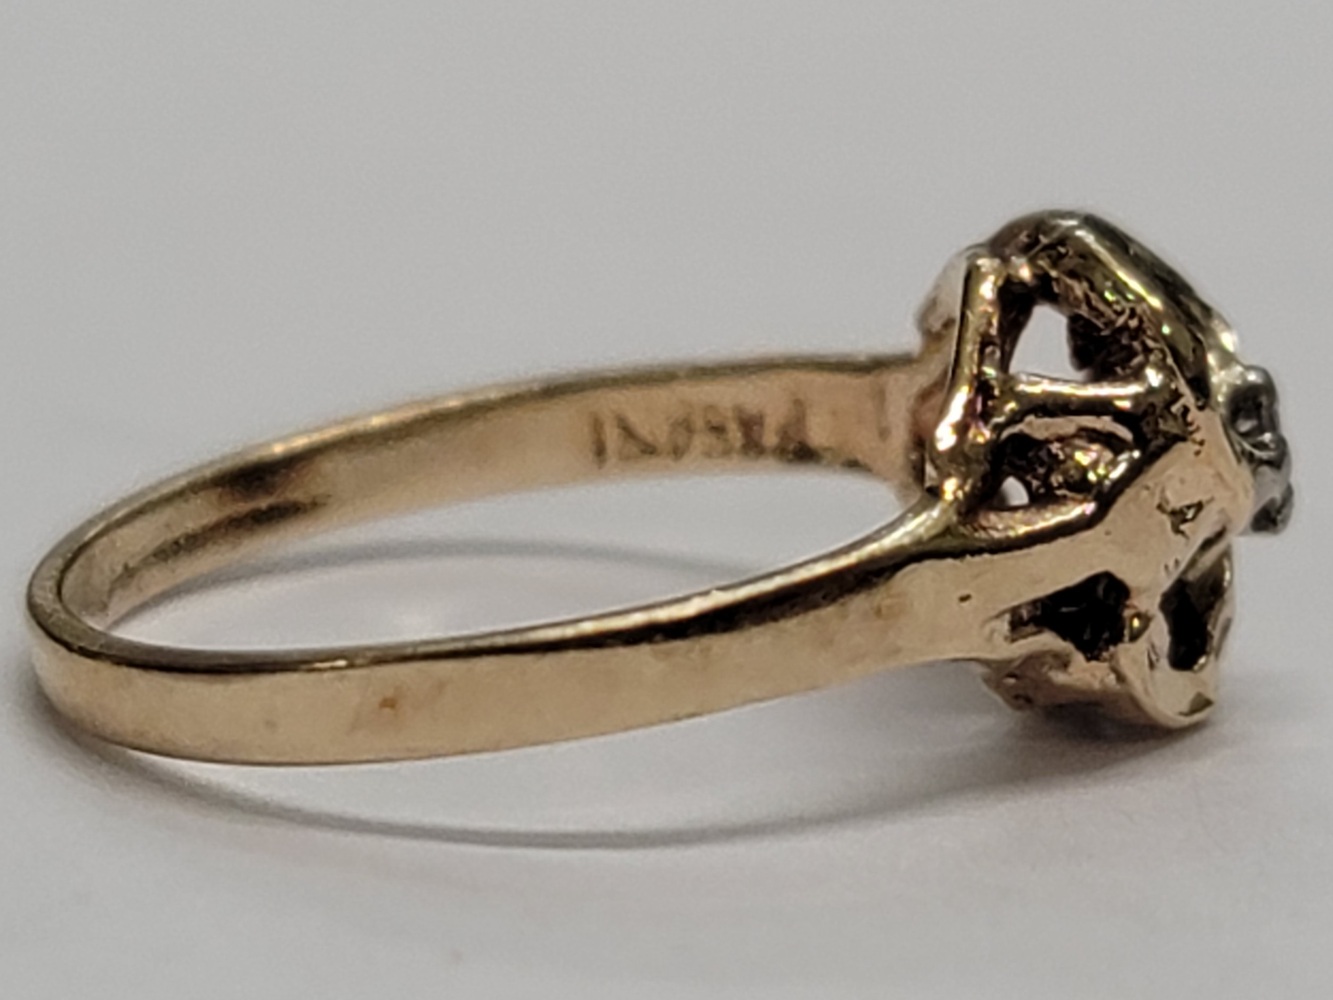 10 Karat Yellow Gold Ring - Size: 3.25